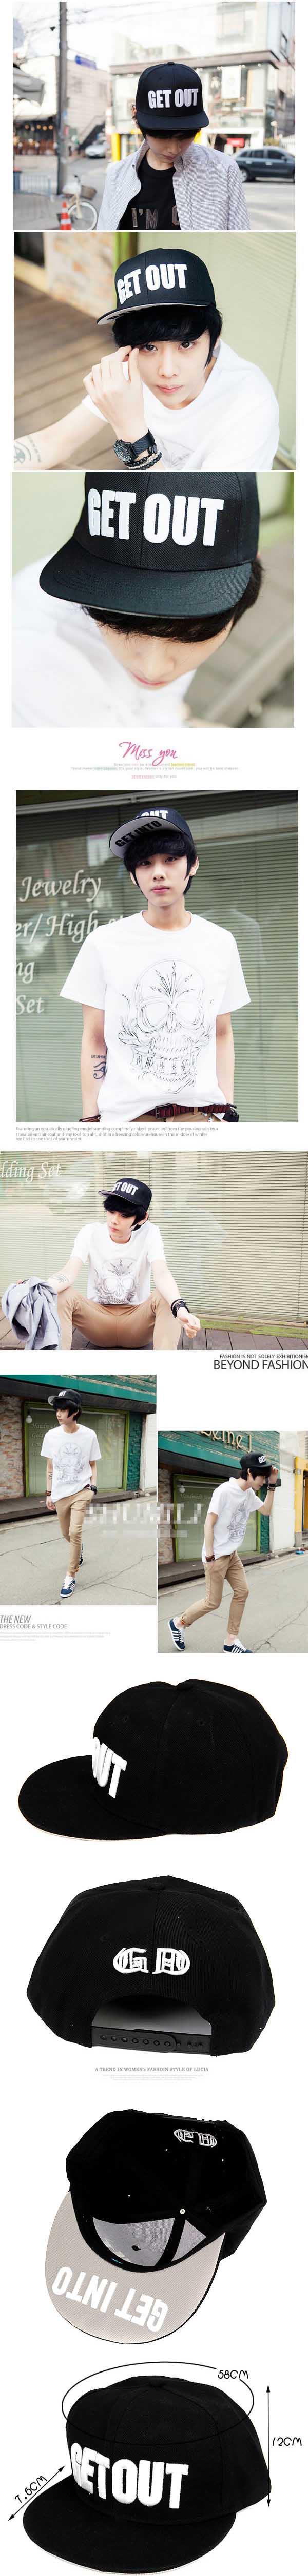 jual topi pria model baseball dengan tulisan get out , trend fashion pria korea , temukan koleksi lain topi baseball pria terbaru hanya di store.oakaianfashionpria.com